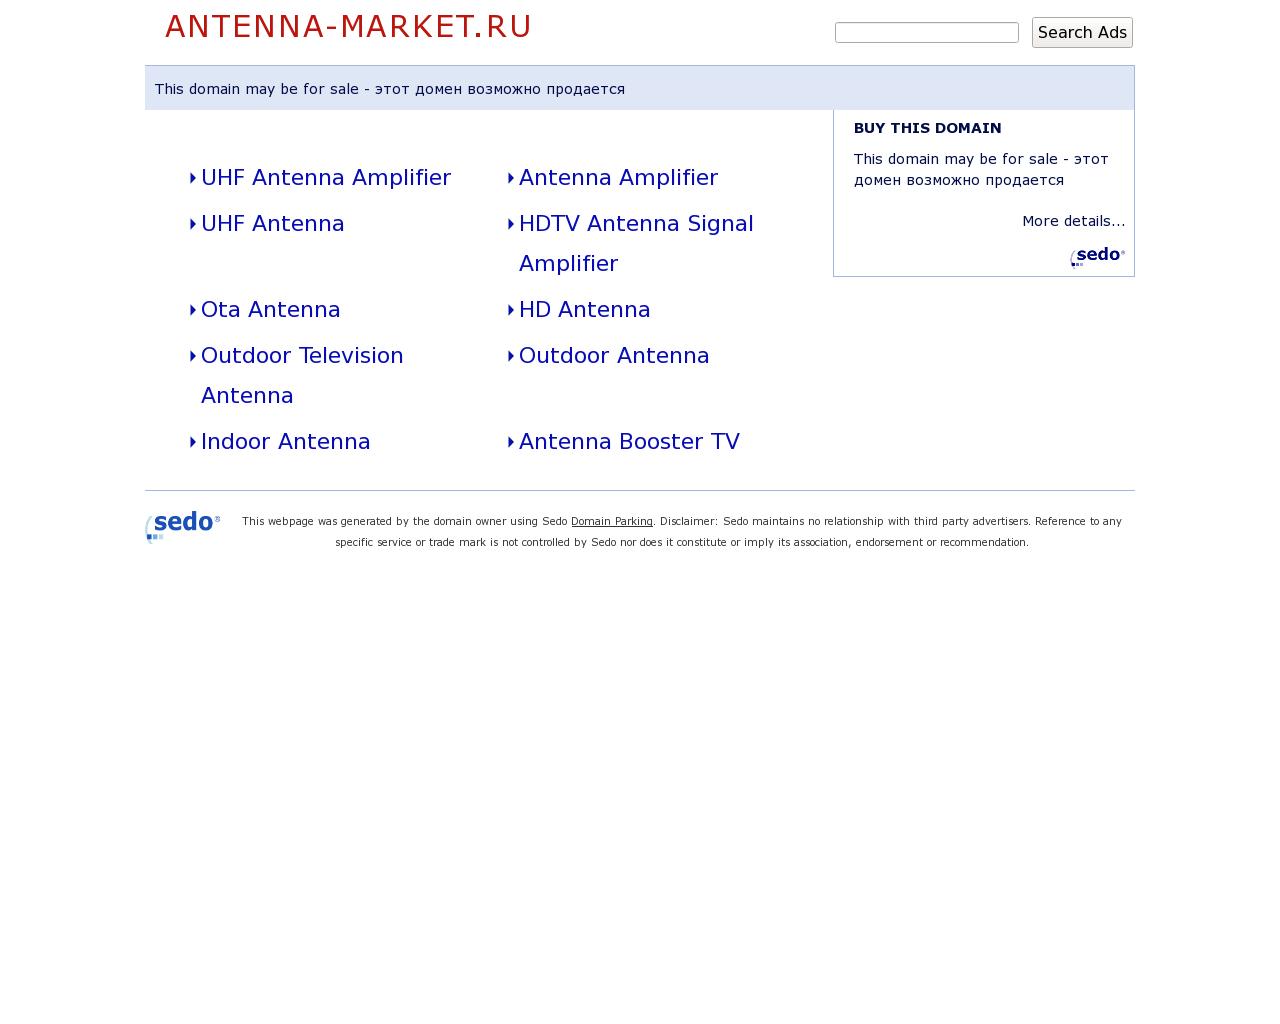 Изображение сайта antenna-market.ru в разрешении 1280x1024